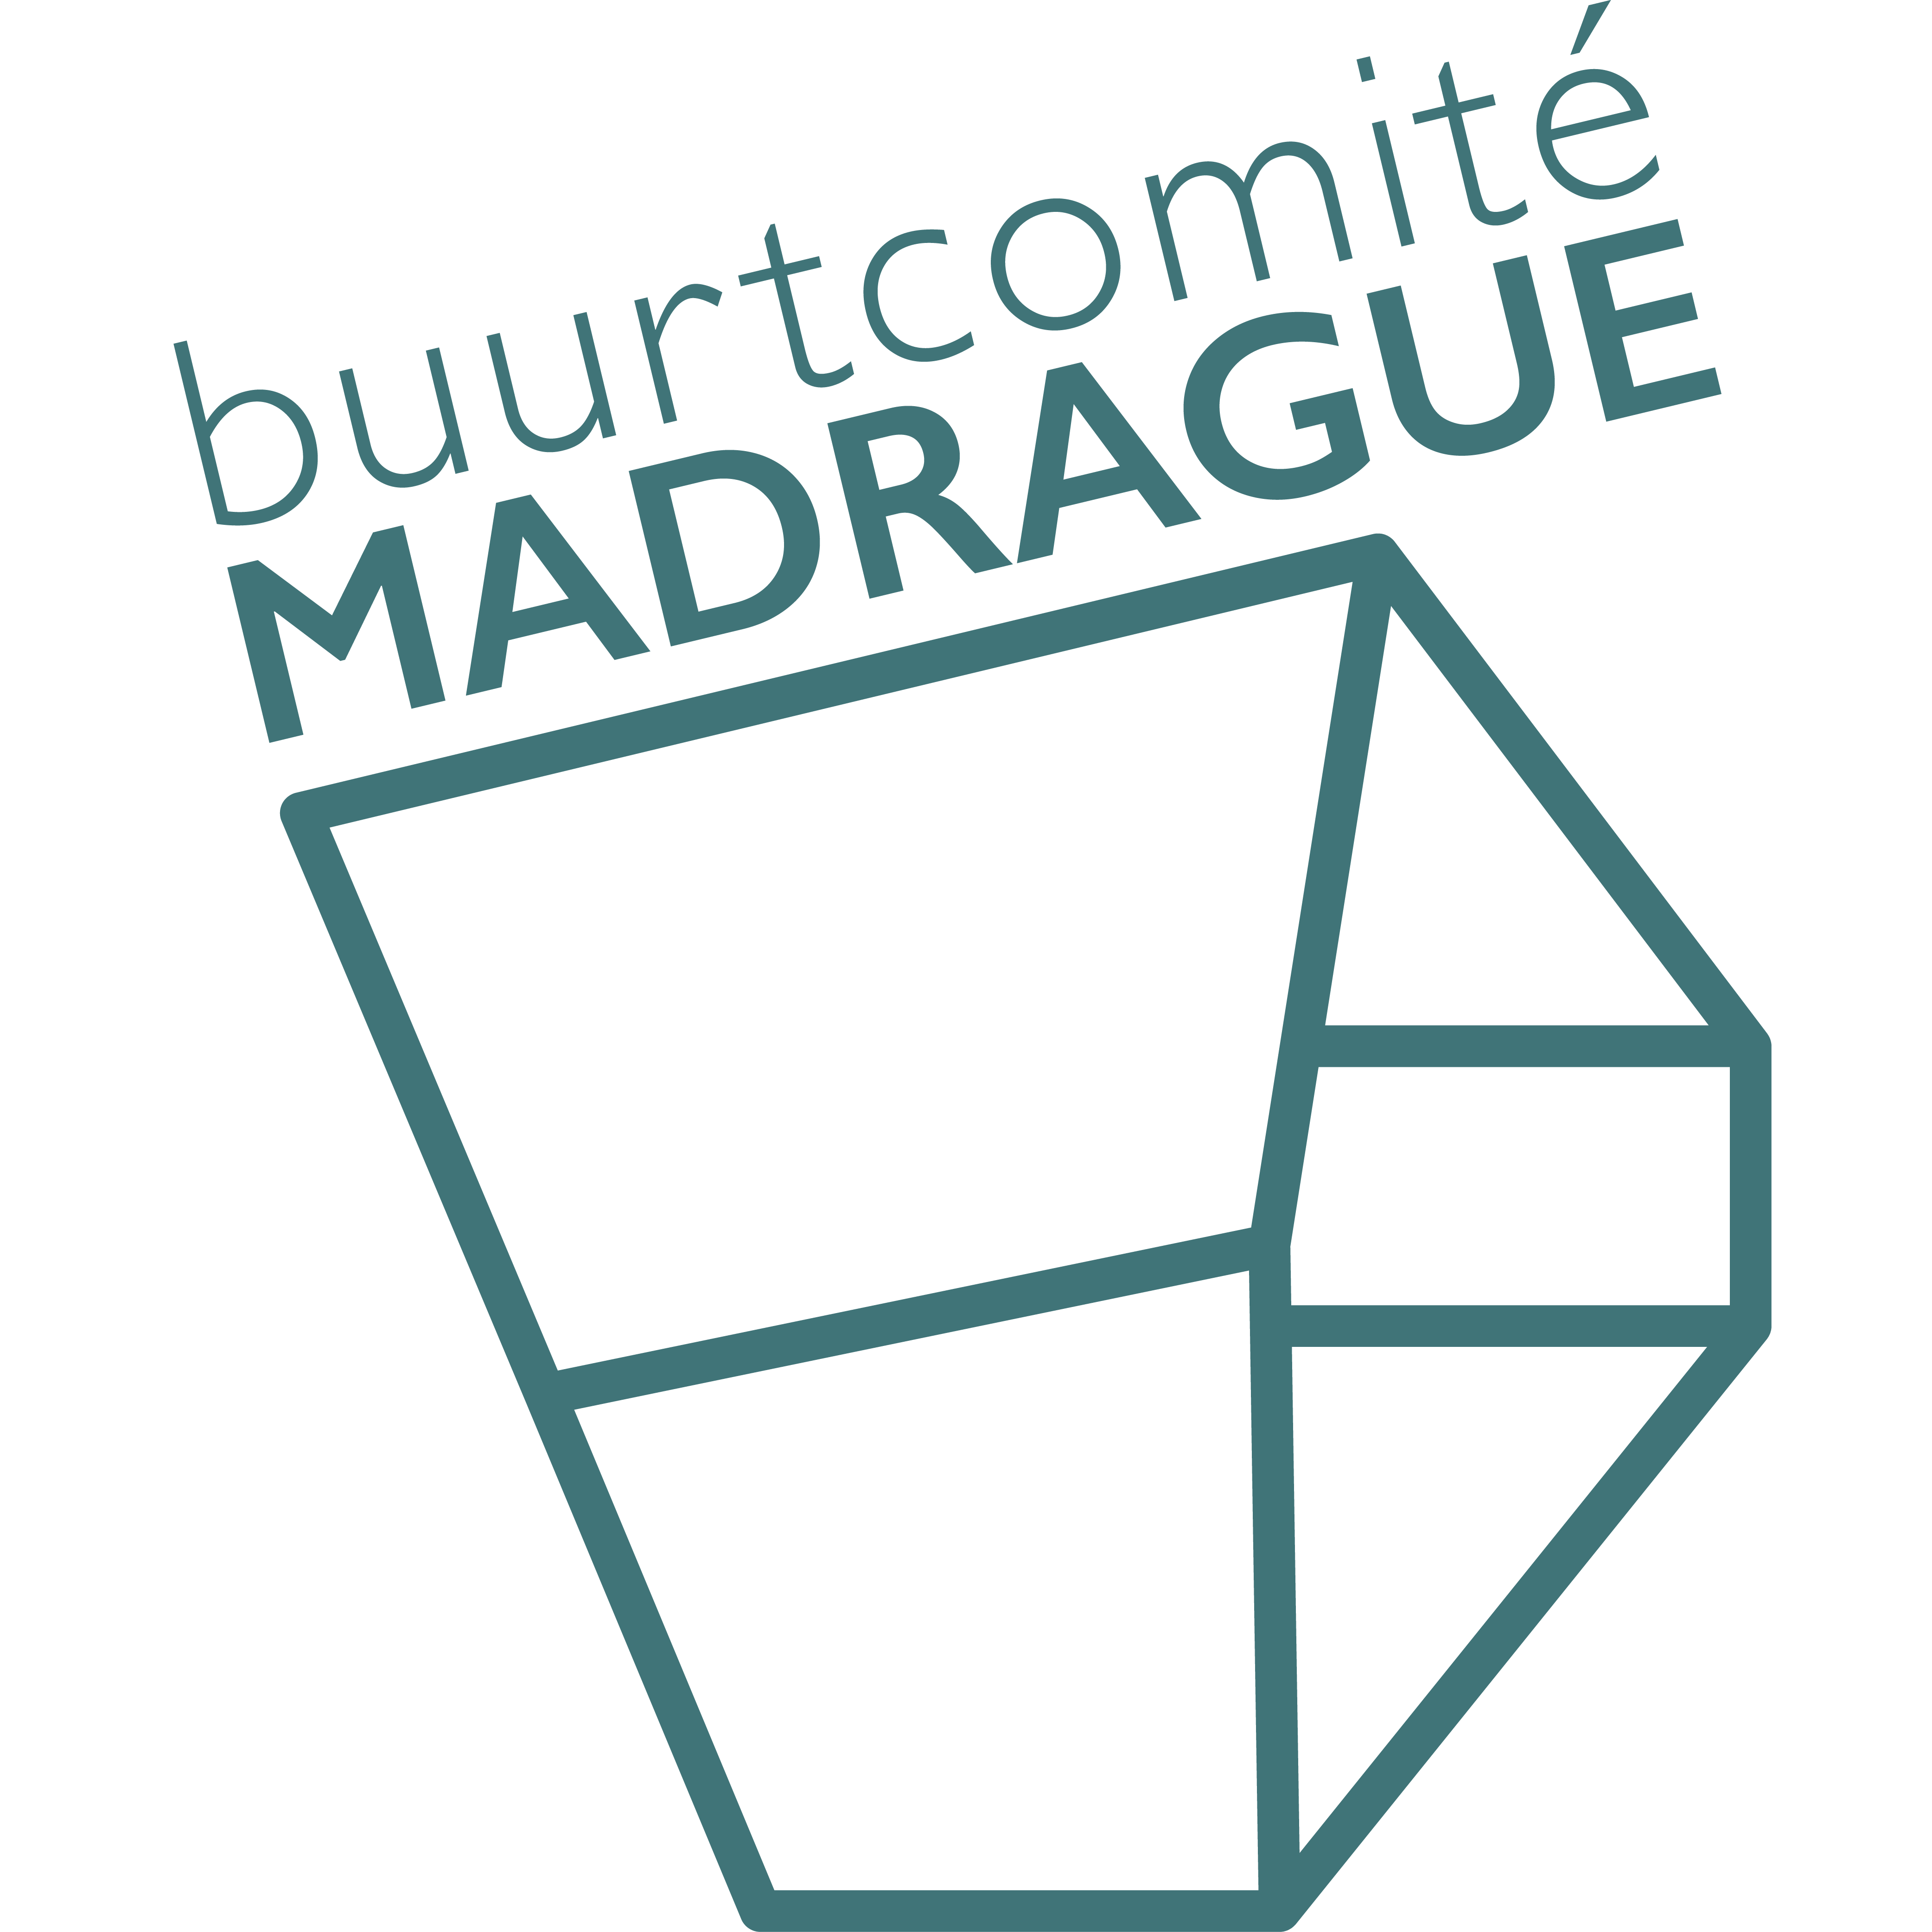 Buurtcomité Madrague logo